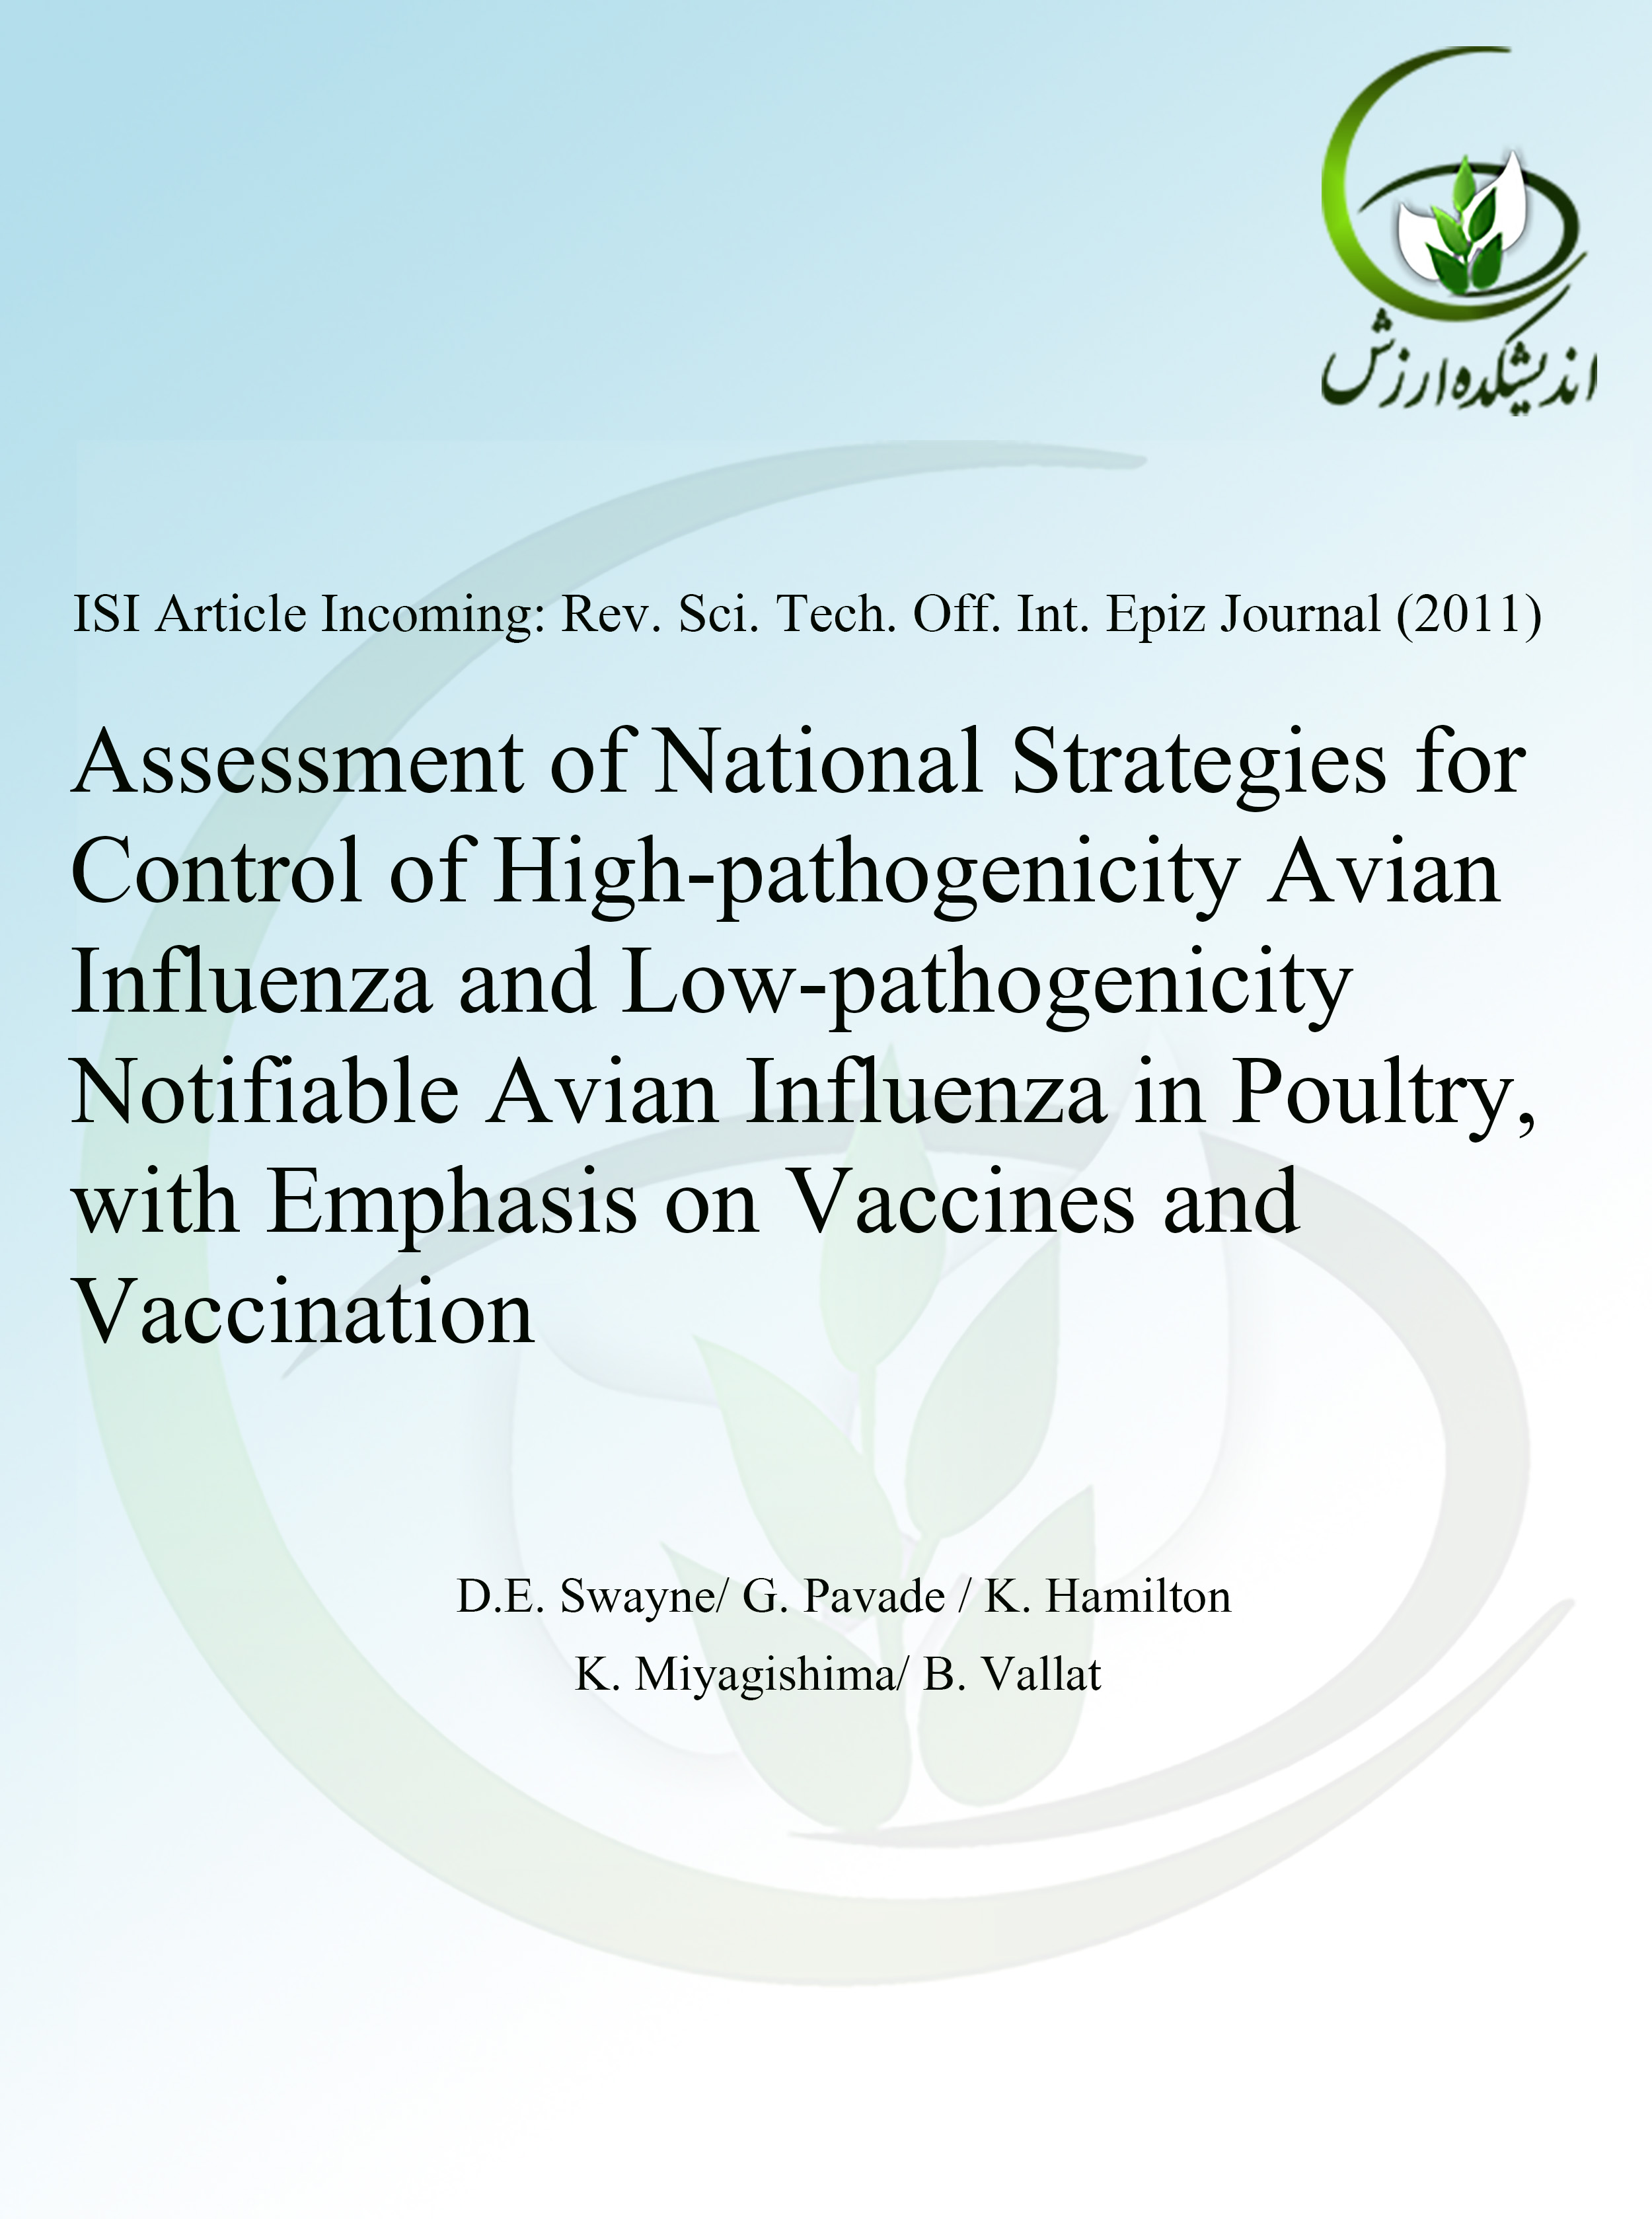 ارزیابی استراتژی ملی کشورها برای کنترل آنفلوانزای حاد و کم شدت پرندگان در طیور با تاکید بر واکسن و واکسیناسیون